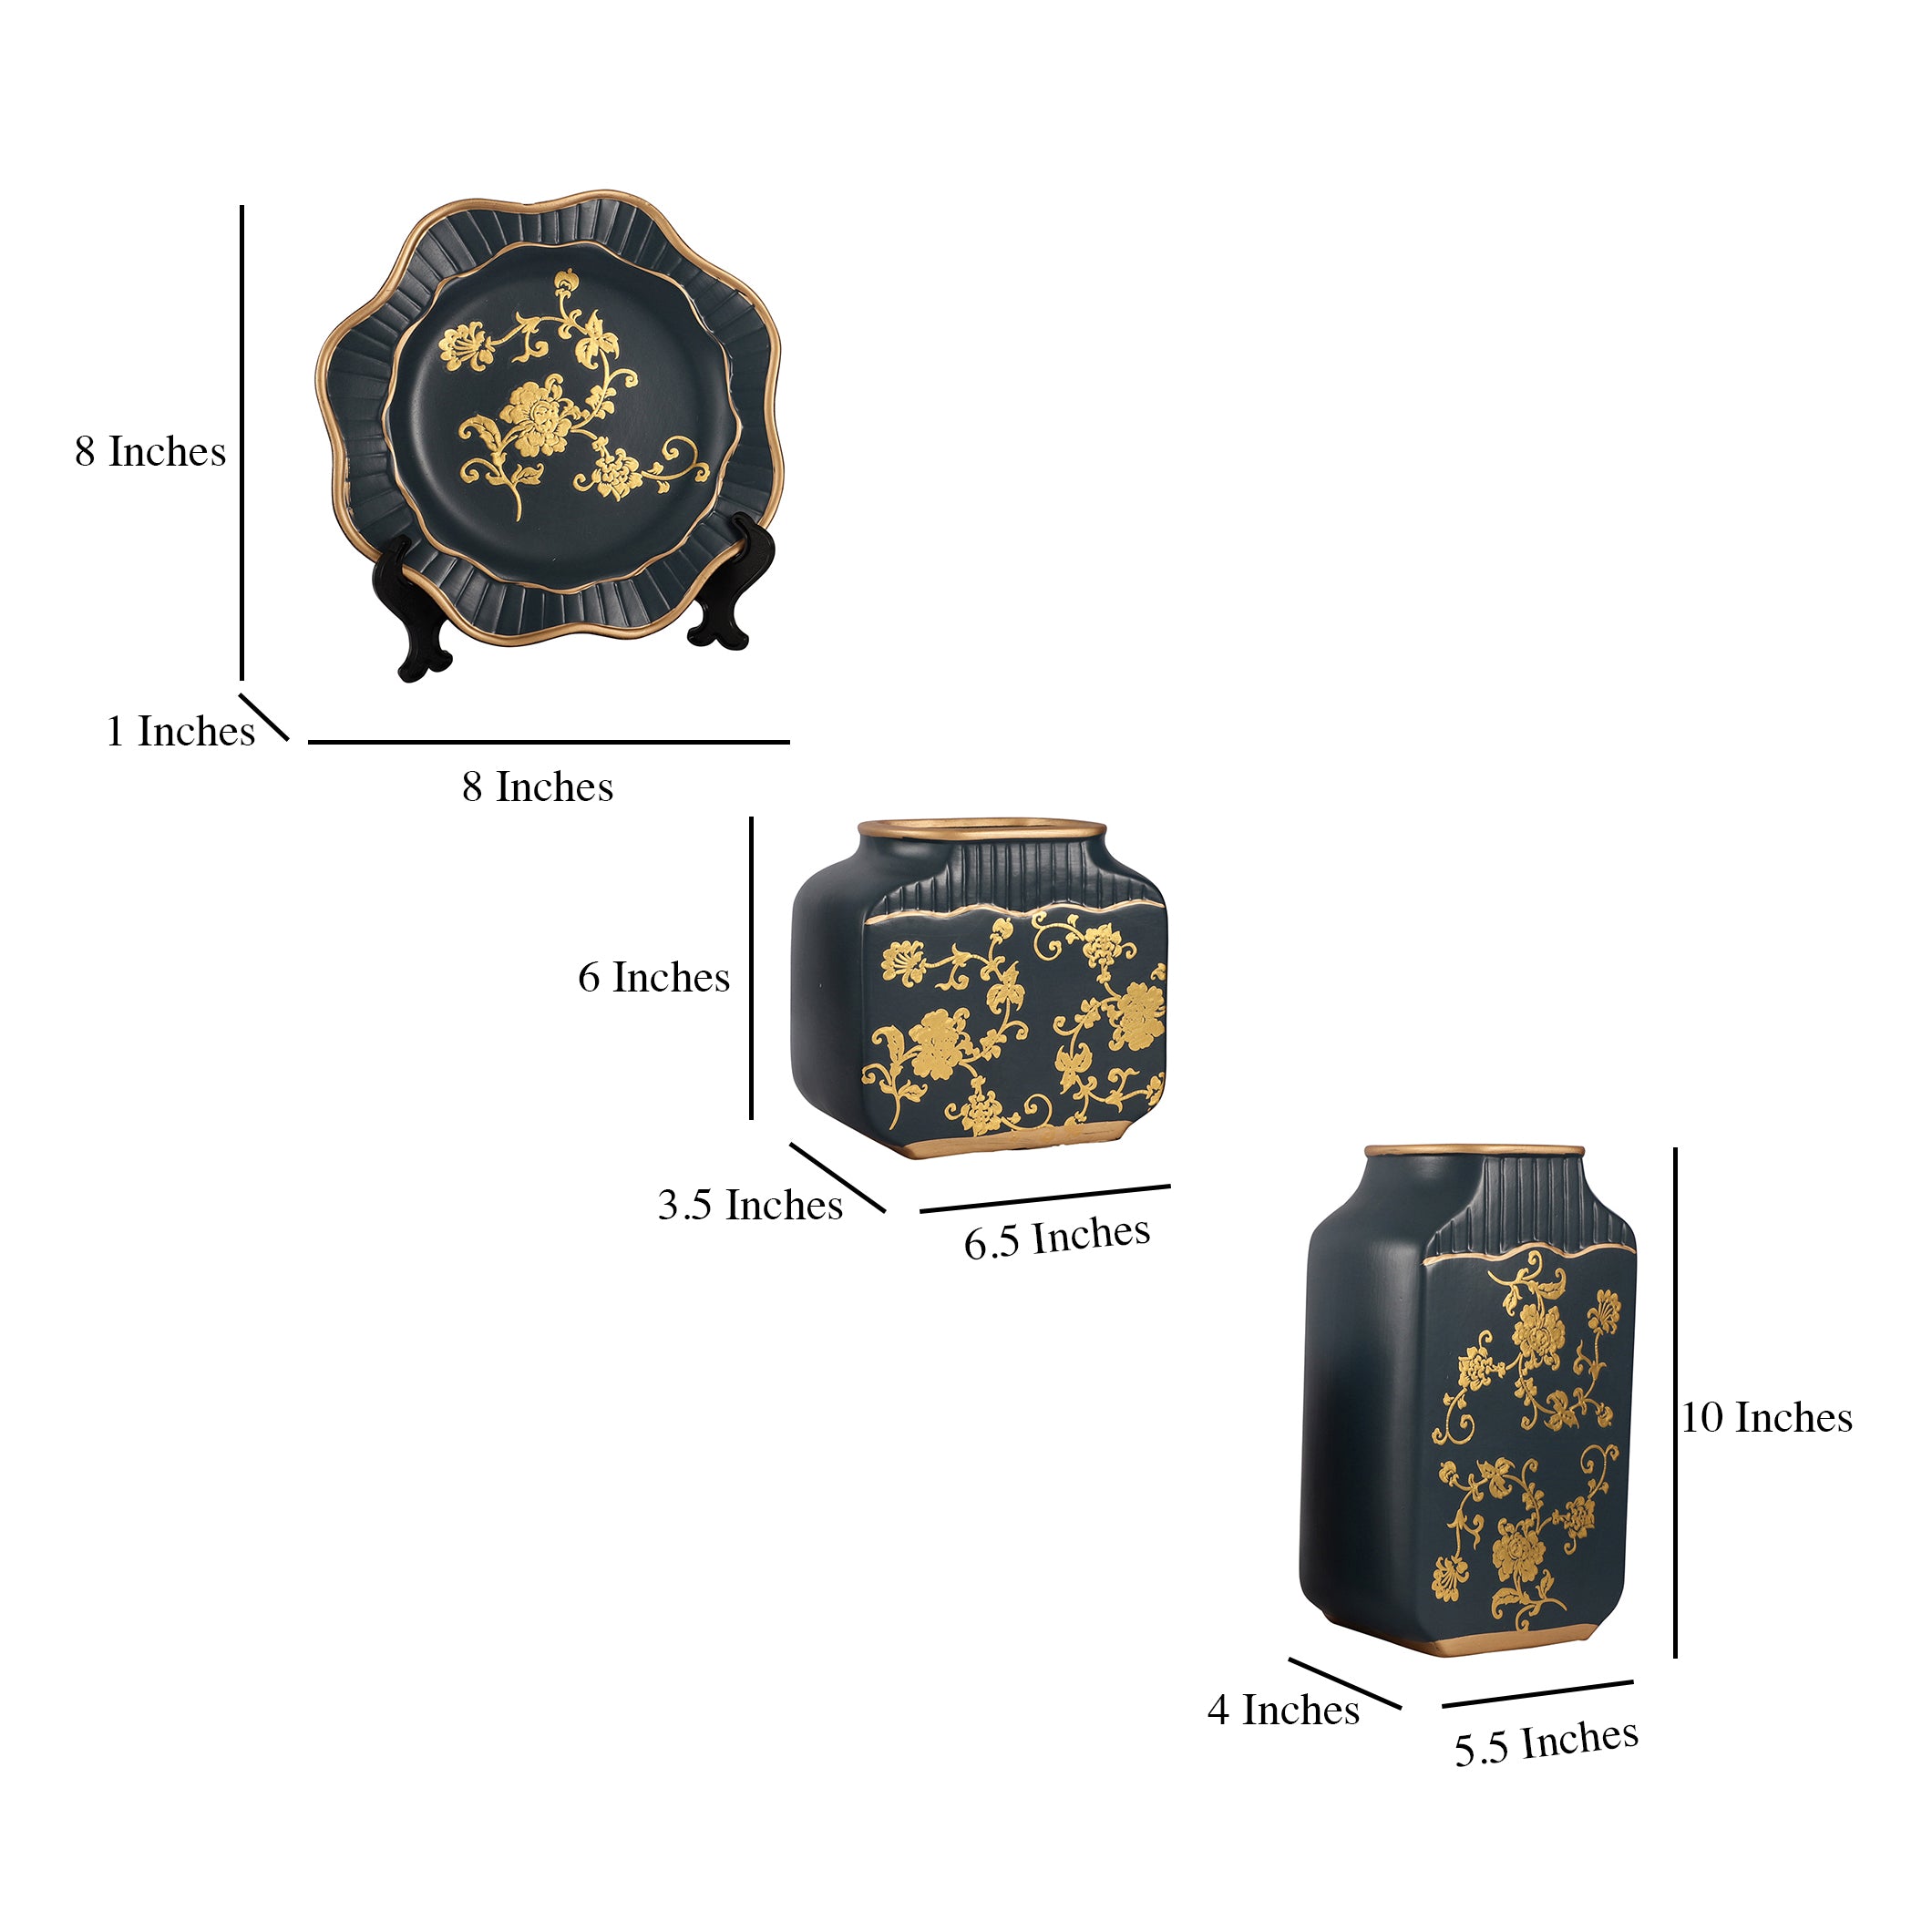 Black Regal Gold Floral Pattern Ceramic Vase Set (Set of 3)